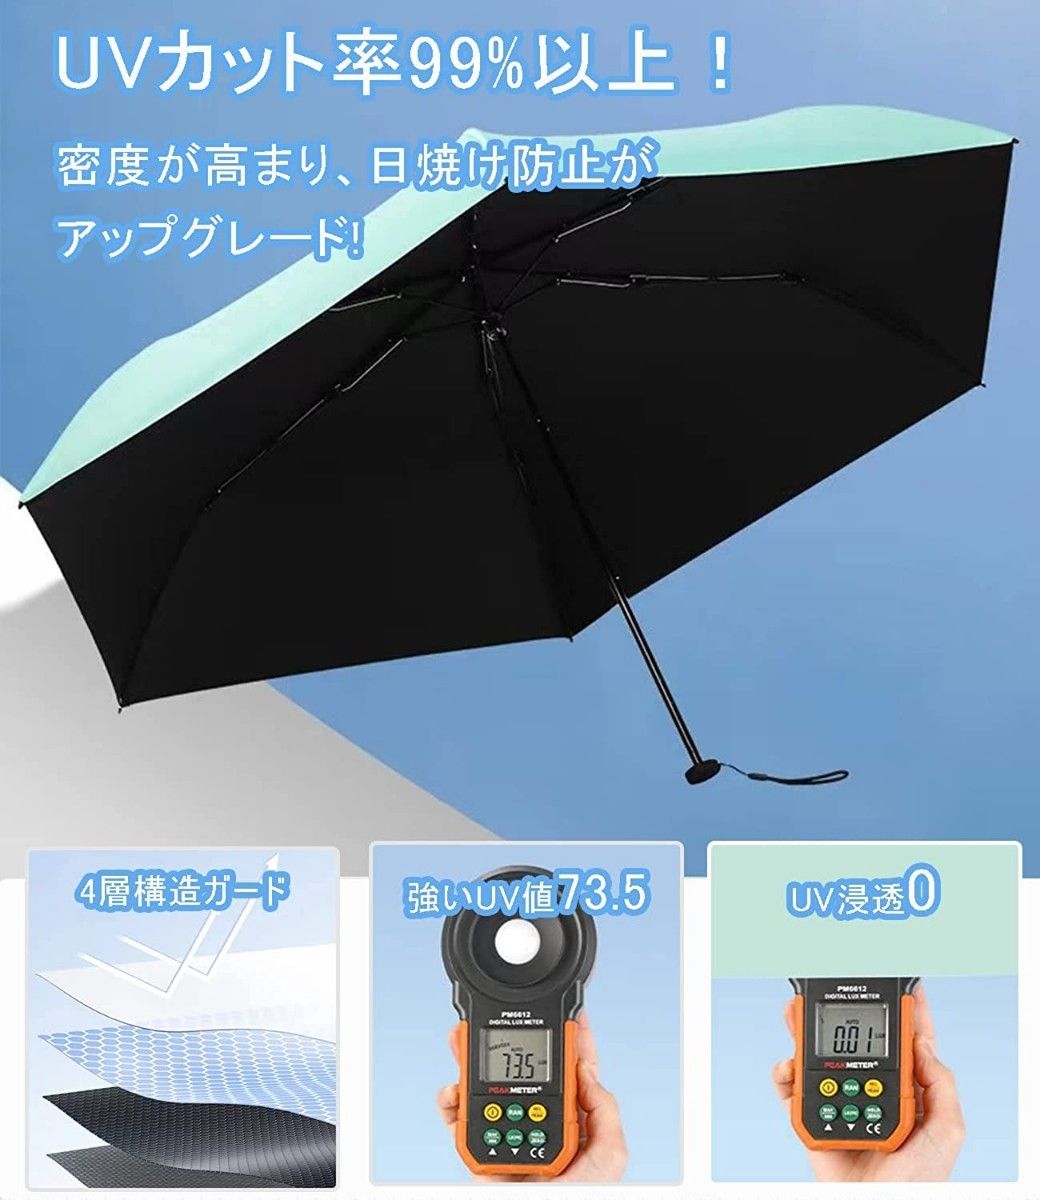 日傘 折りたたみ傘 超軽量 UVカット率100% 完全遮光 紫外線対策 晴雨兼用 超コンパクトサイズ 収納ポーチ付き ピンク